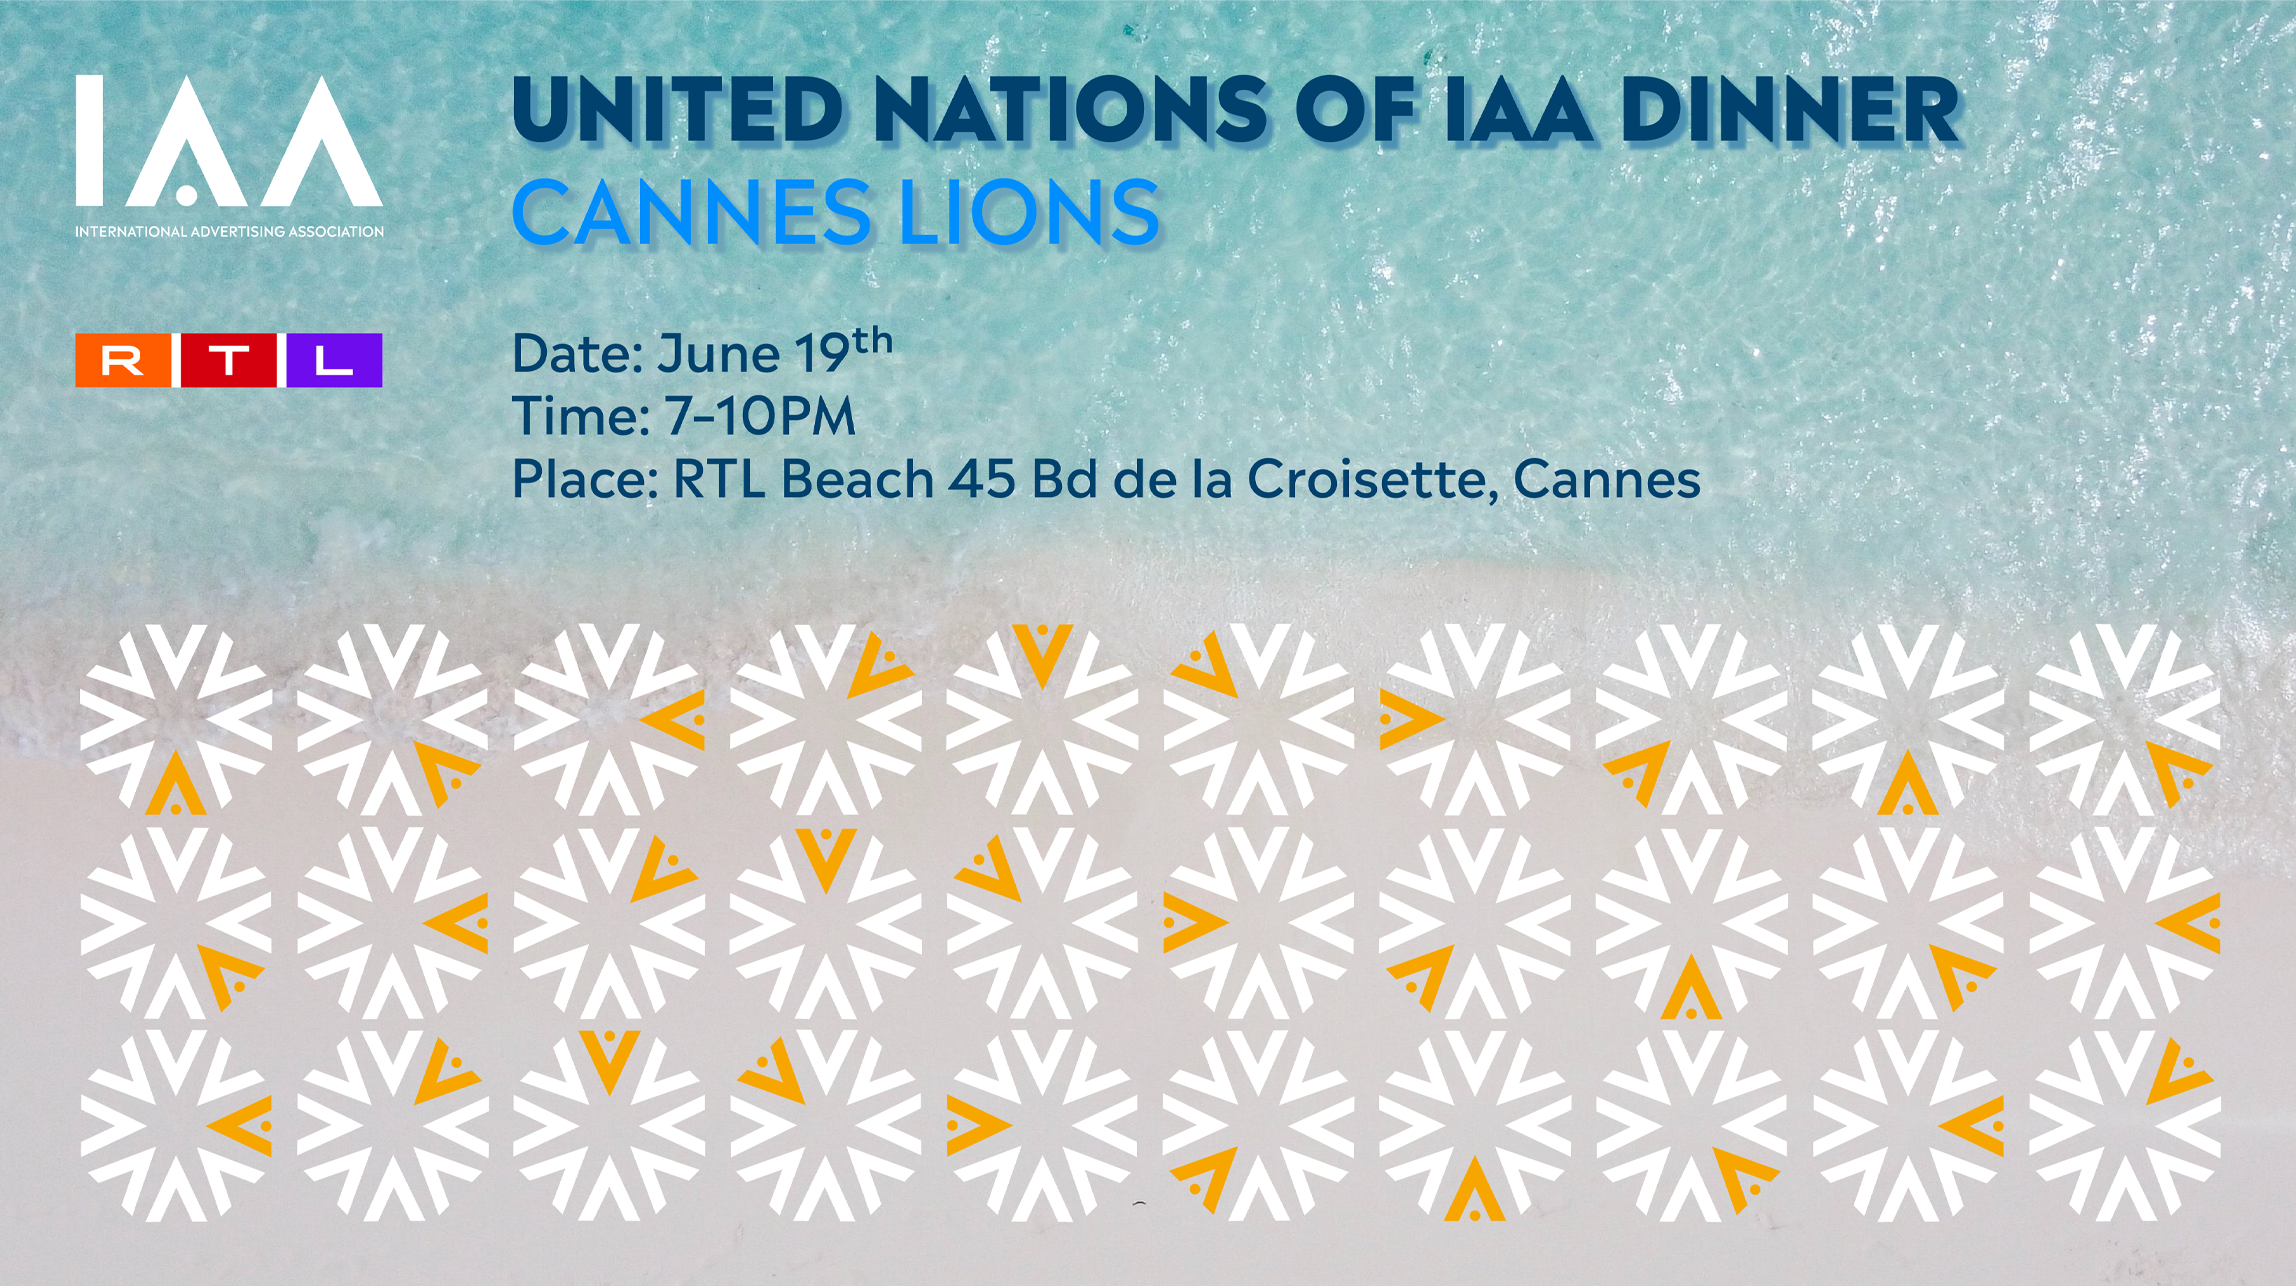 United Nations of IAA Dinner